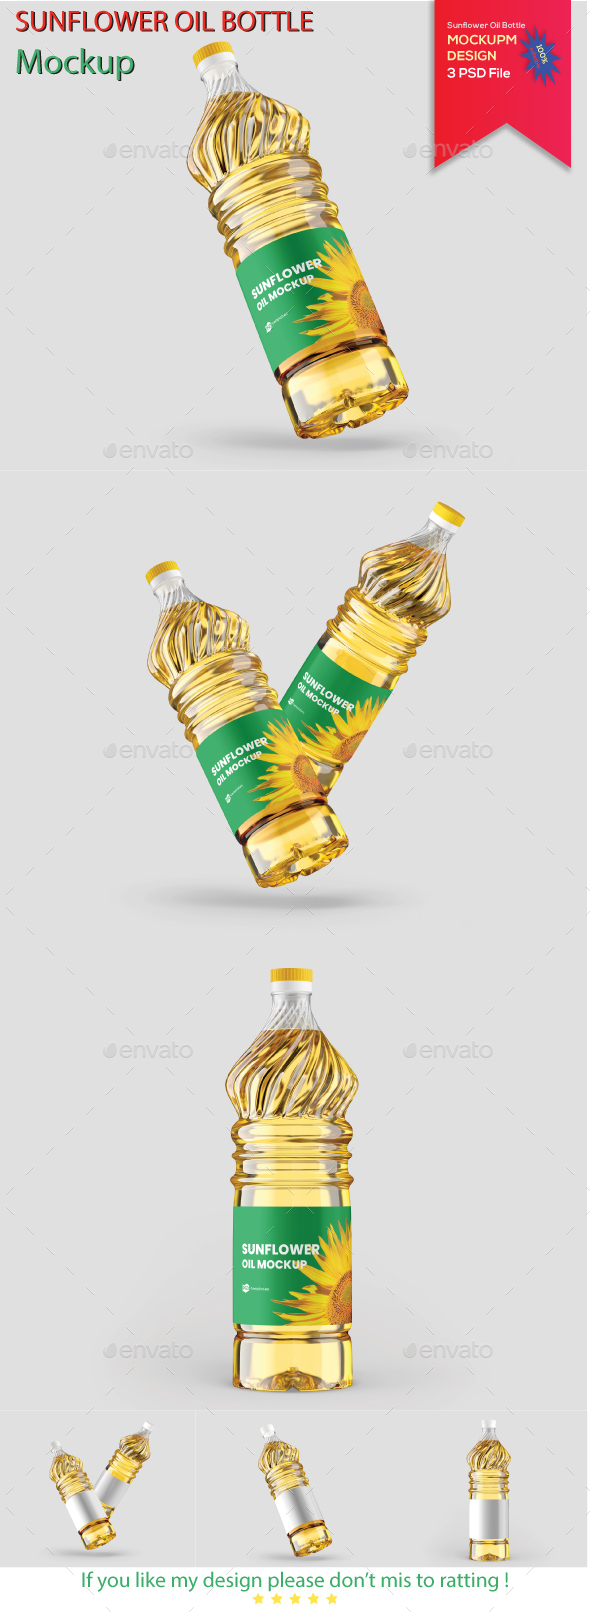 Sunflower Oil Bottle Mockup